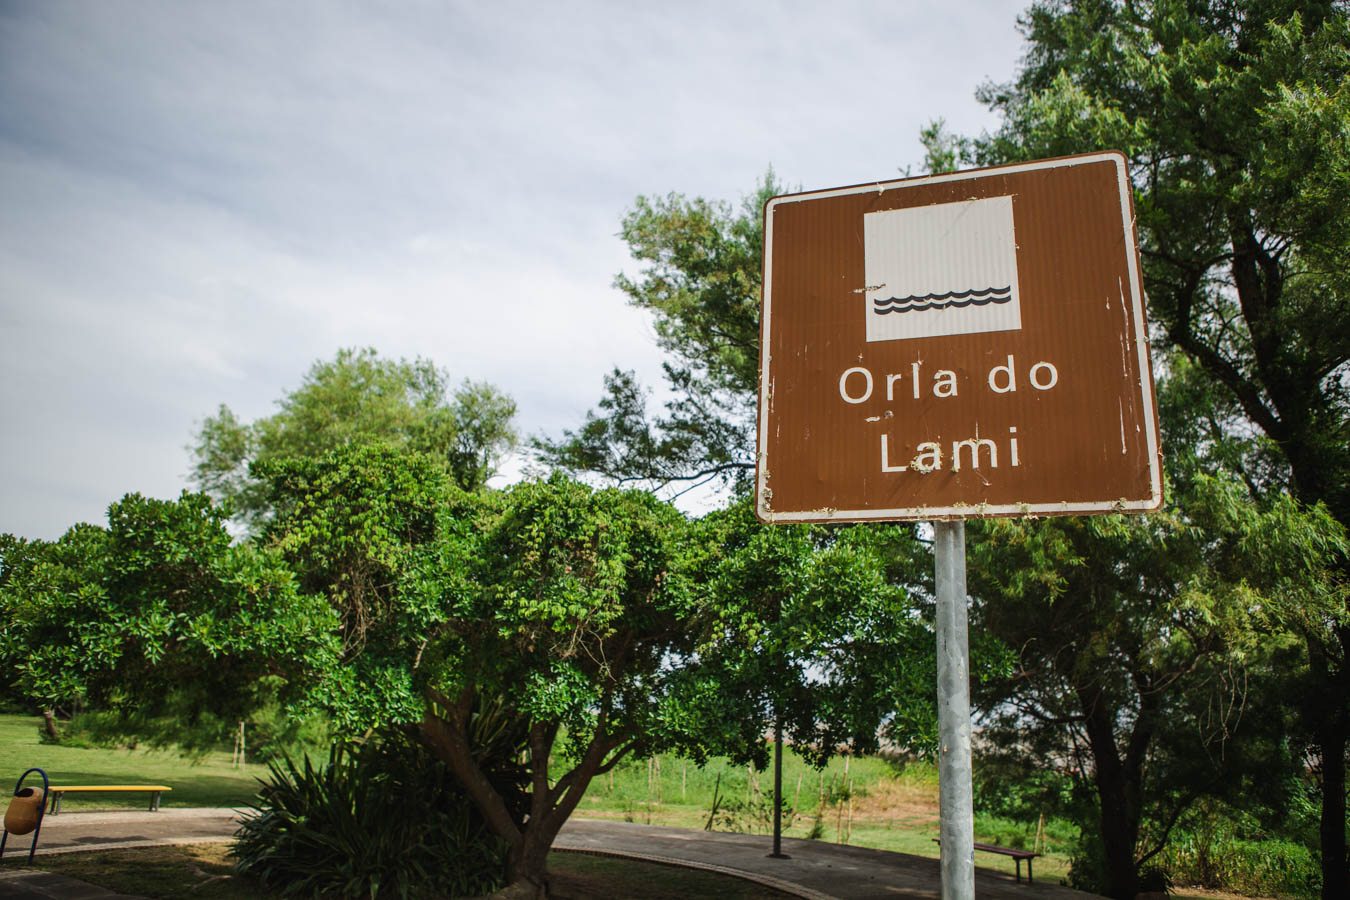 Moradores do Lami avaliam que privatização vai elitizar o bairro e